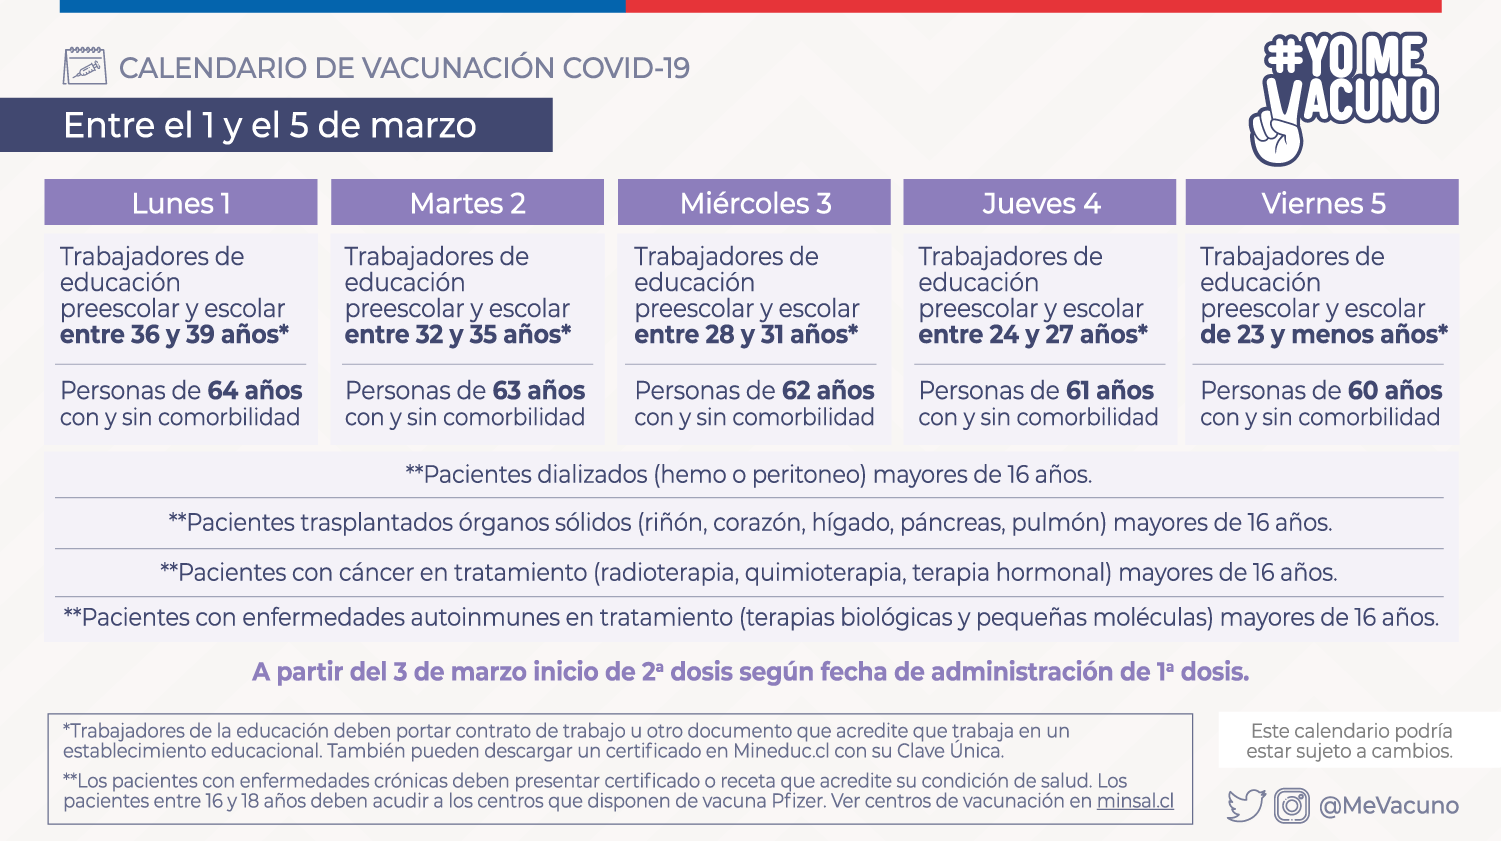 redes-sociales_vacunacion-semana-5_1-de-marzo_tw-1.png